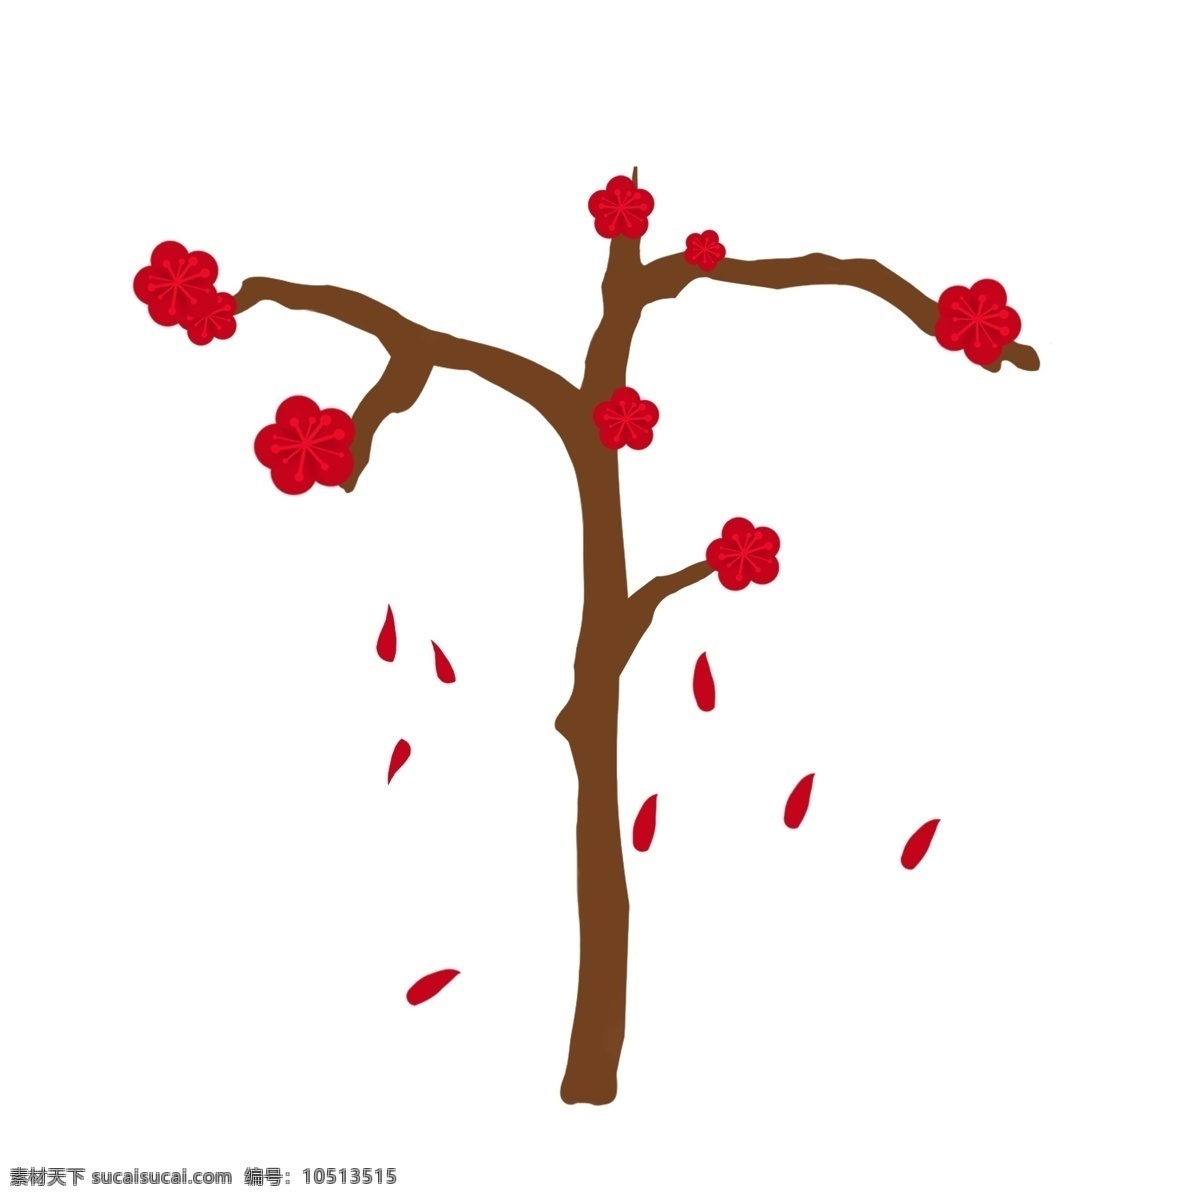 中国 风 手绘 花卉 梅花 好看 创 意图 中式梅花 红色 装饰 图 国风梅花插花 手绘梅花图